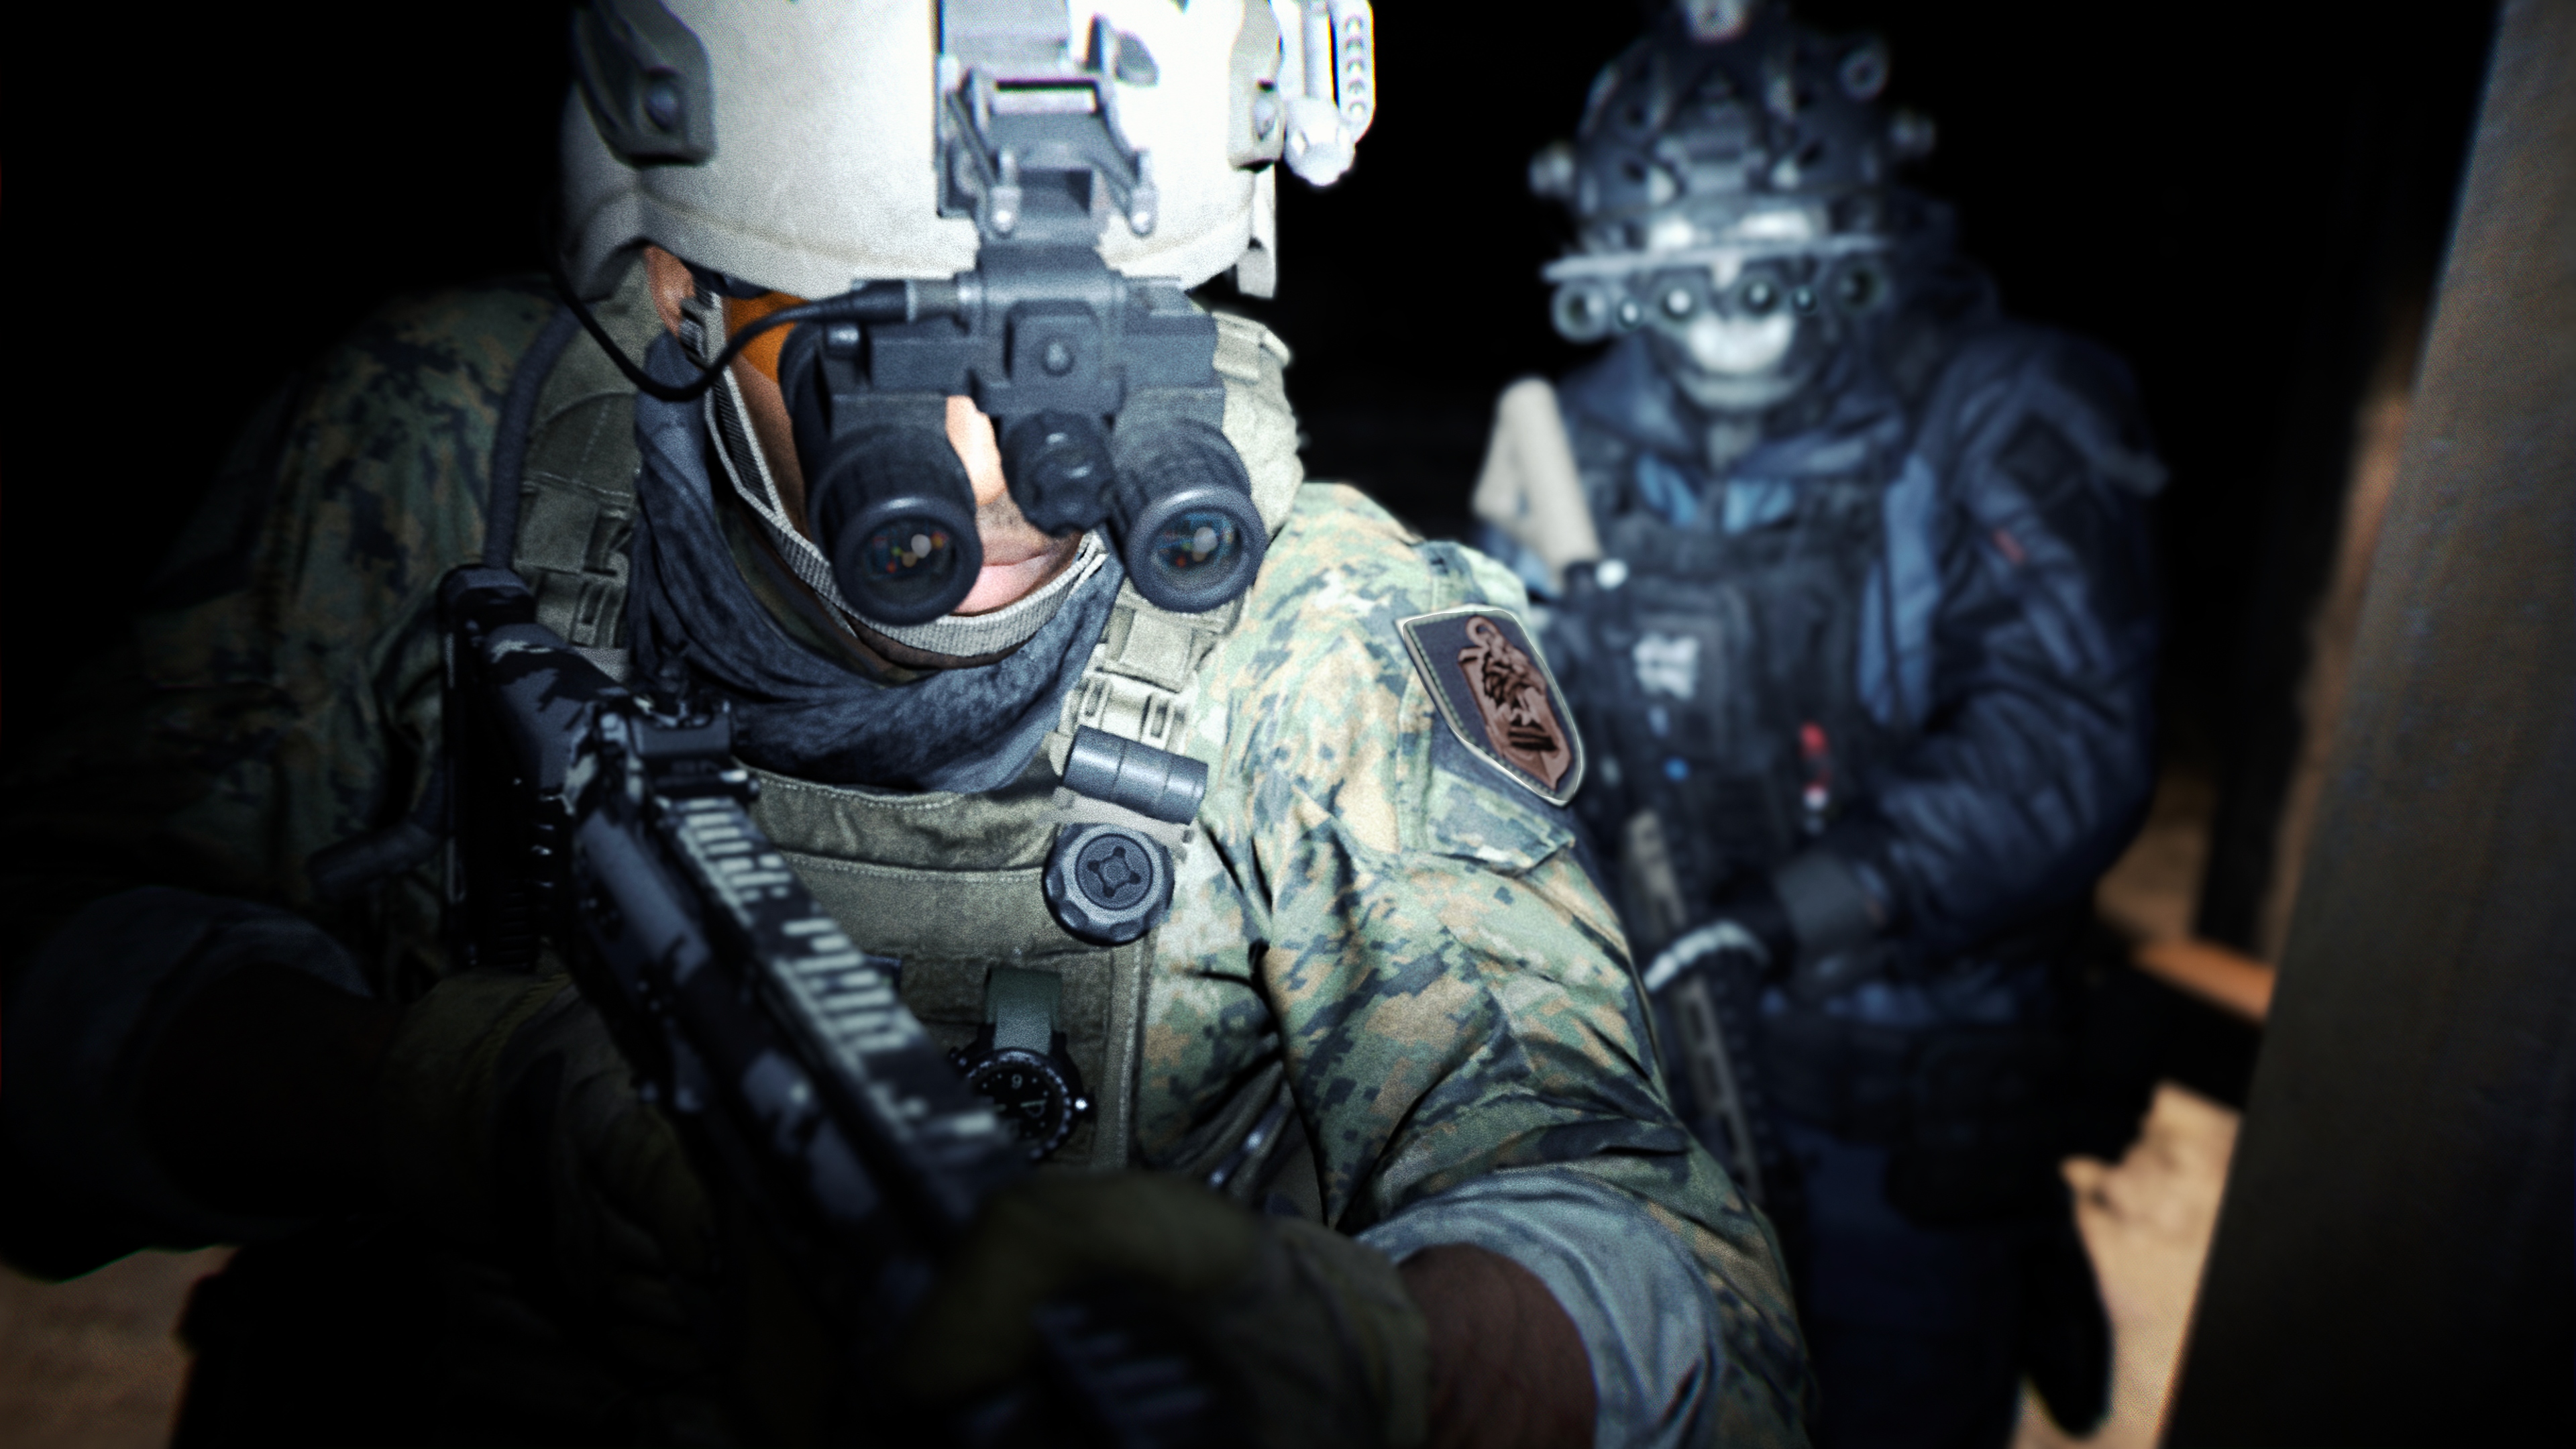 Call of Duty: Modern Warfare 2 2022 captura de pantalla mostrando a un personaje con gafas de visión nocturna